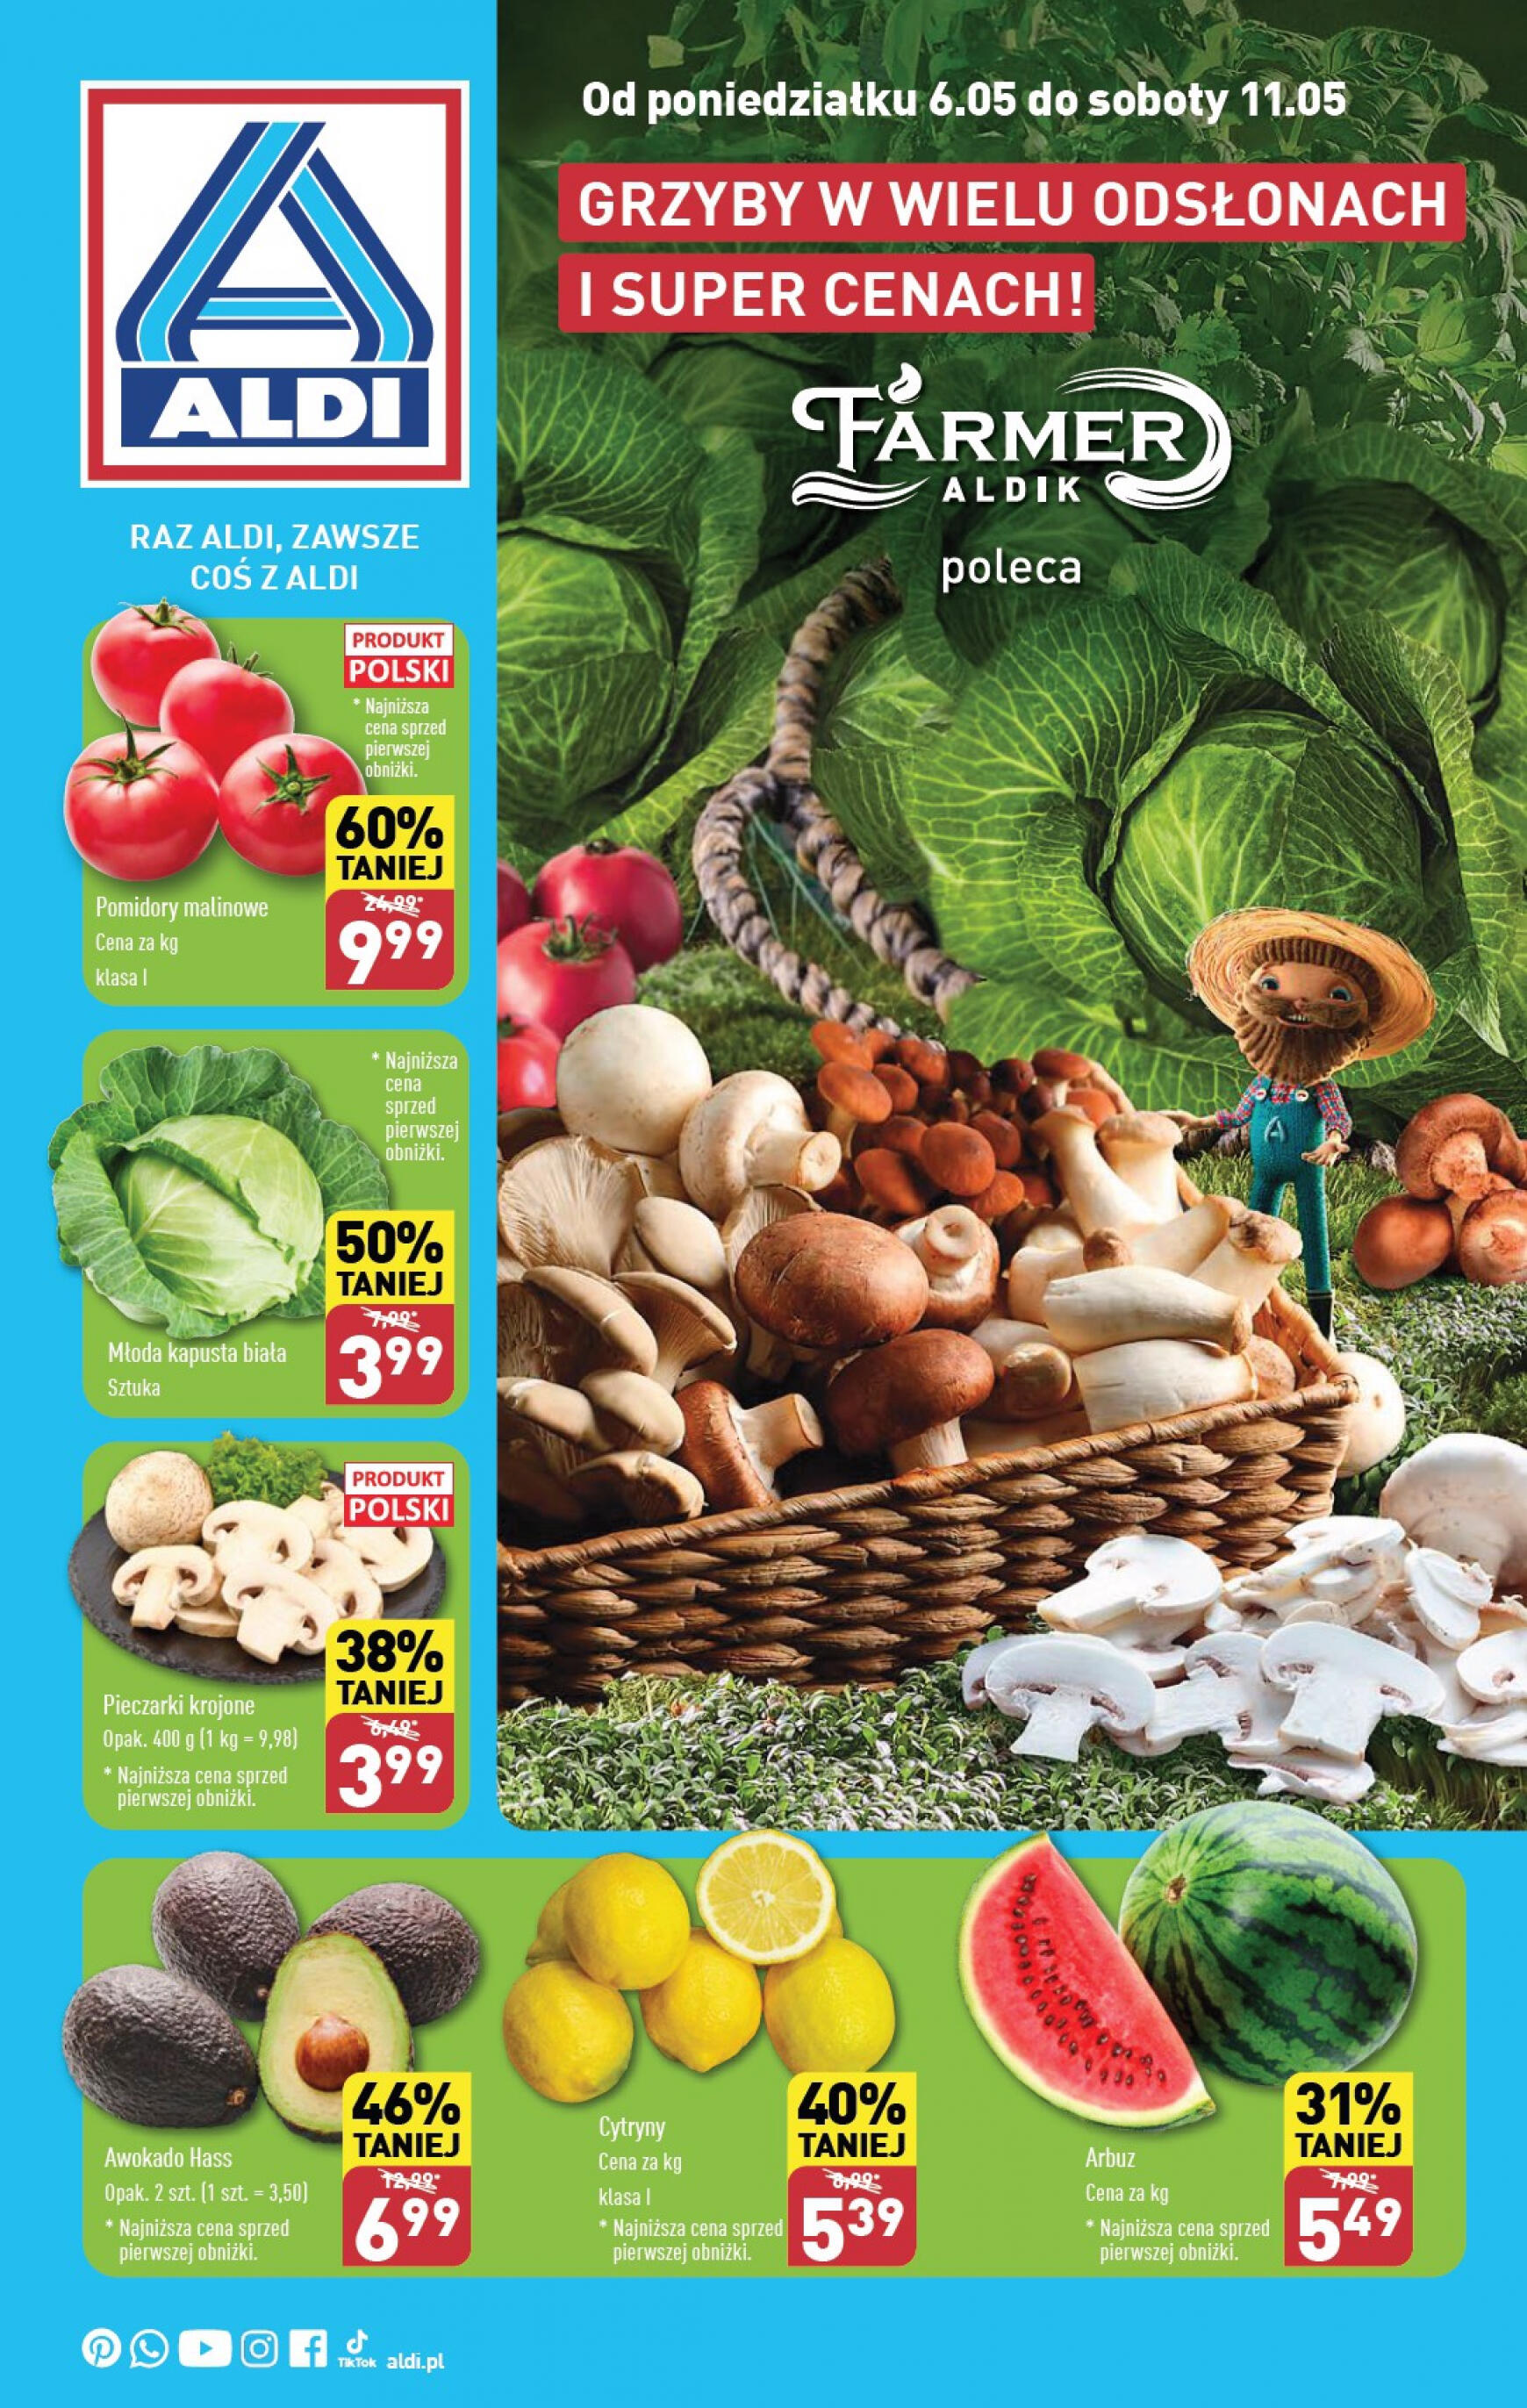 aldi - ALDI - Farmer ALDIK poleca świeże owoce i warzywa gazetka aktualna ważna od 06.05. - 11.05. - page: 1